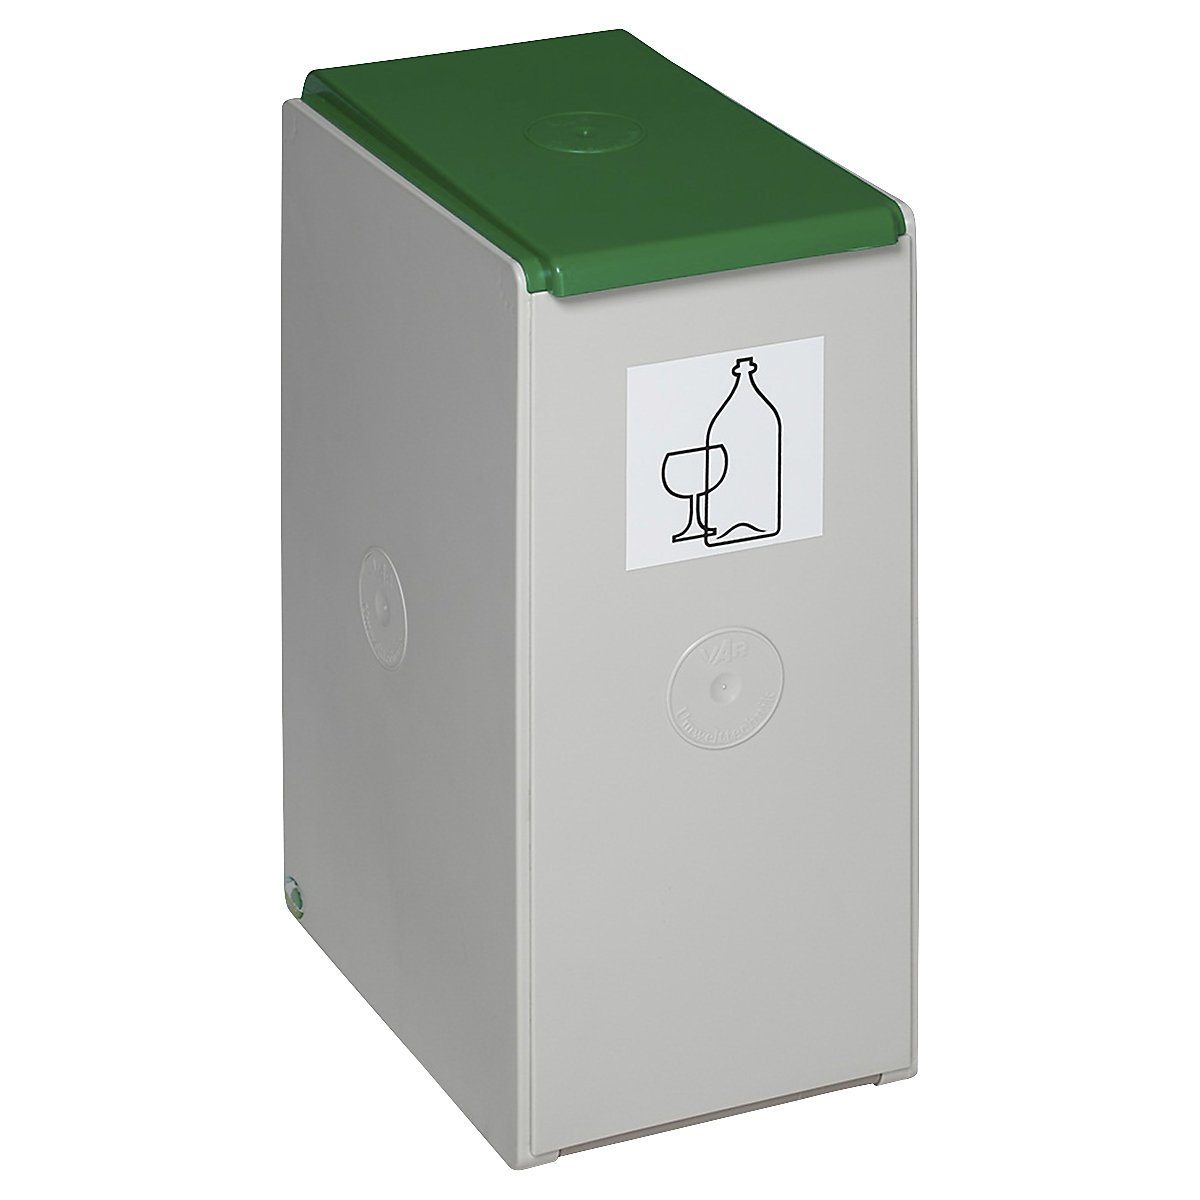 Coletor de materiais recicláveis em plástico – VAR, recipiente individual com capacidade de 40 l, verde-6